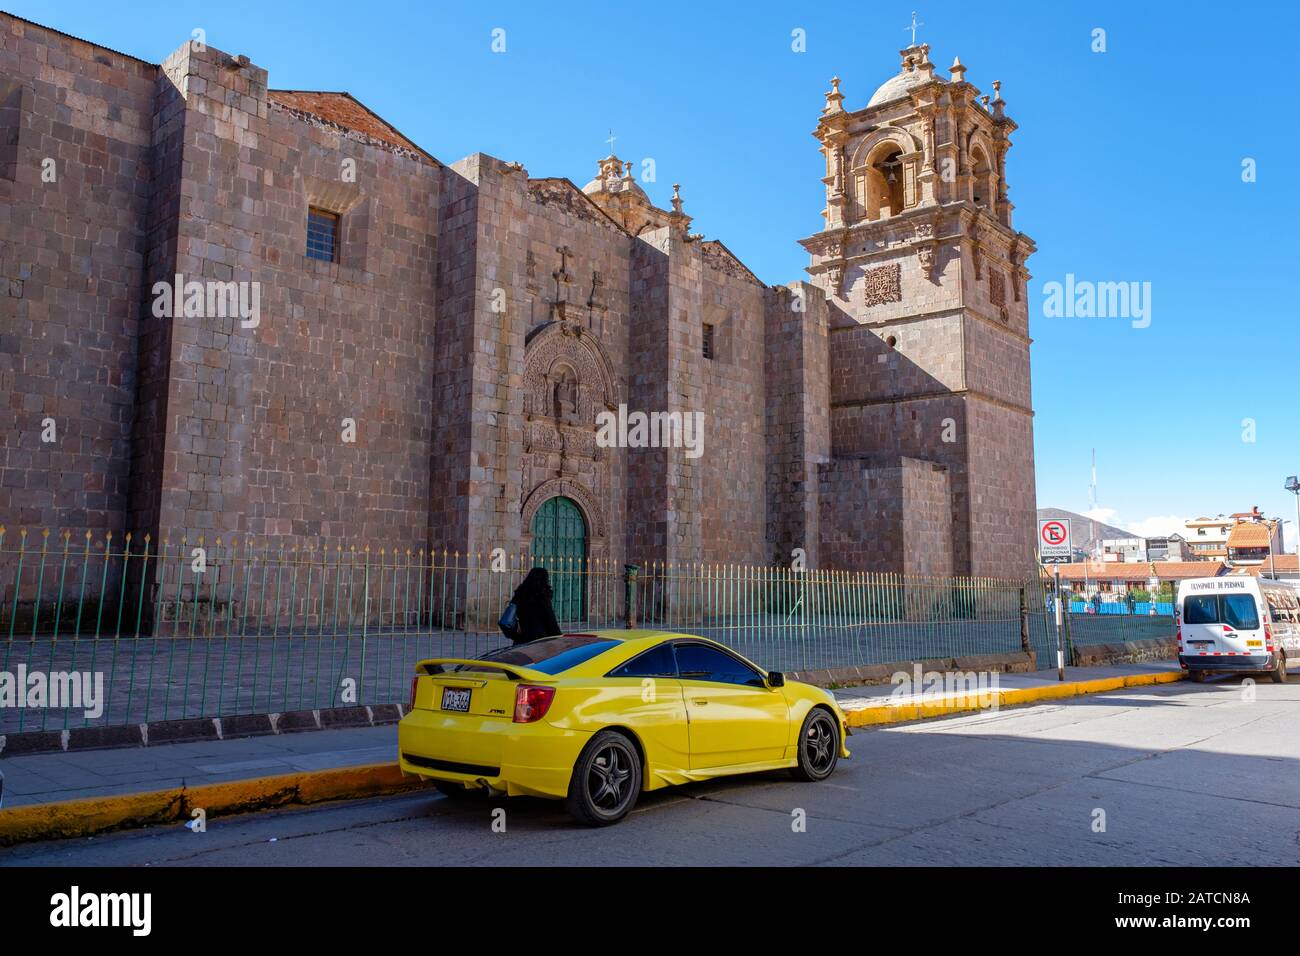 Toyota Celica TRD jaune stationné devant la basilique de la cathédrale Saint-Charles Borromeo, Puno, Pérou Banque D'Images